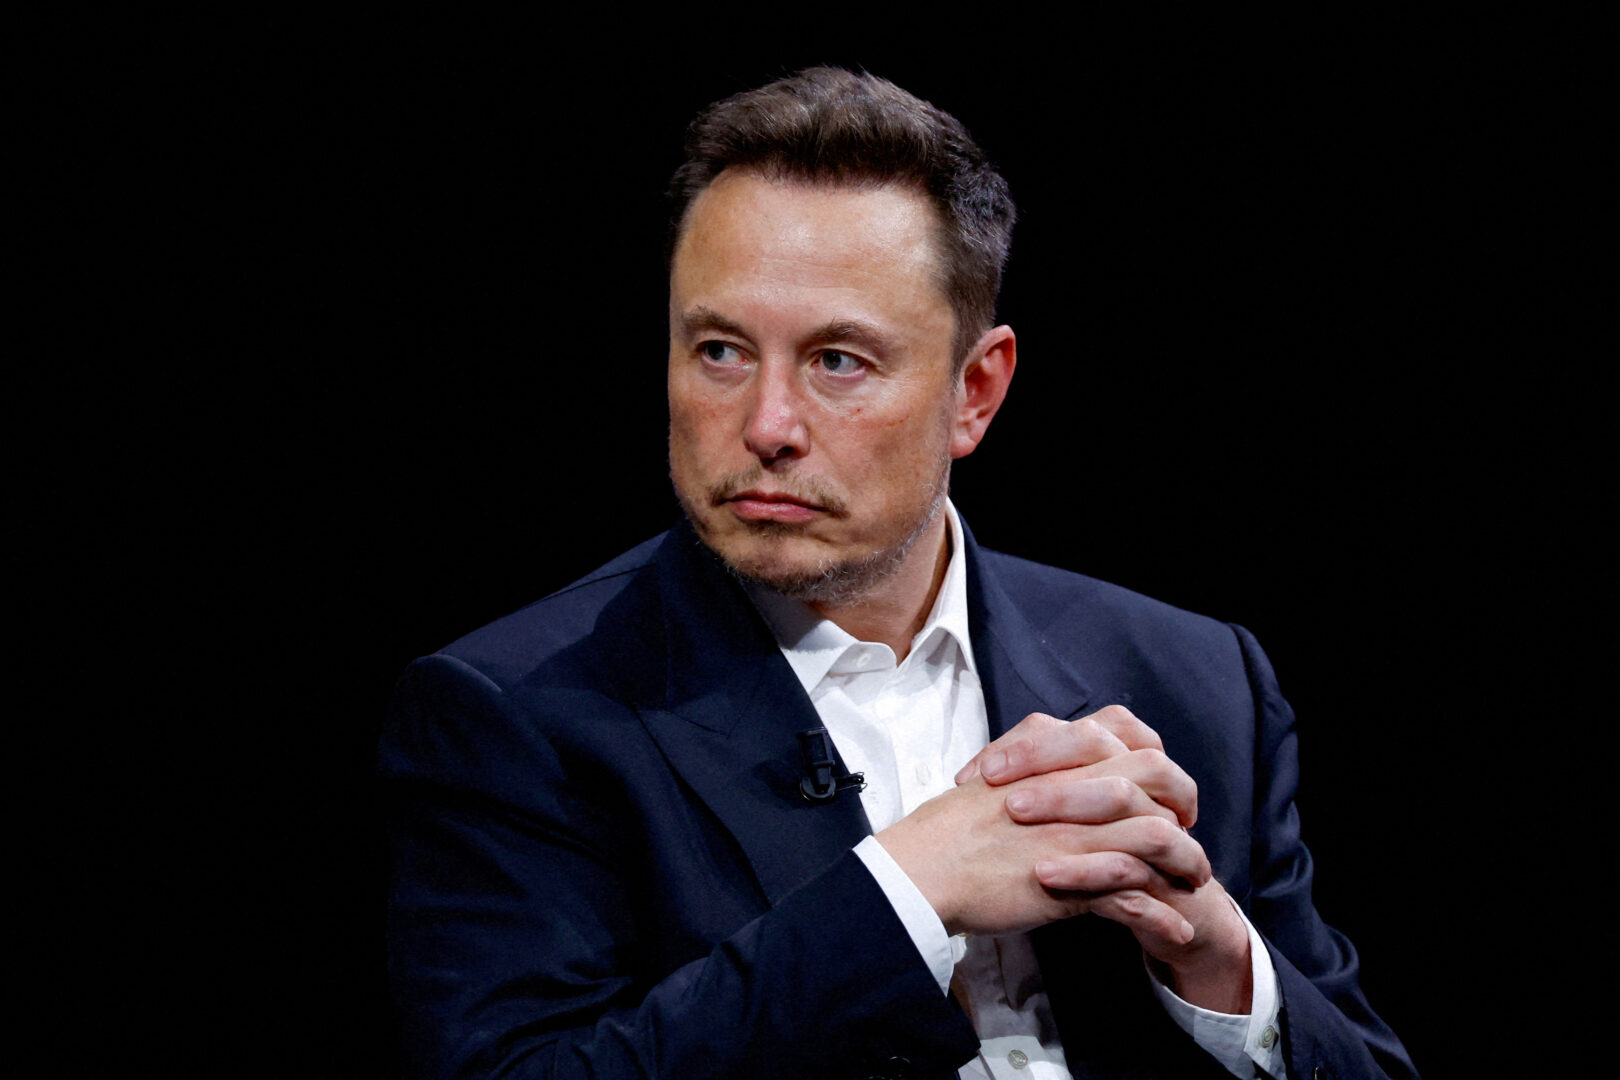 Elon Musk amenință că va interzice dispozitivele Apple după ce compania a anunțat integrarea ChatGPT